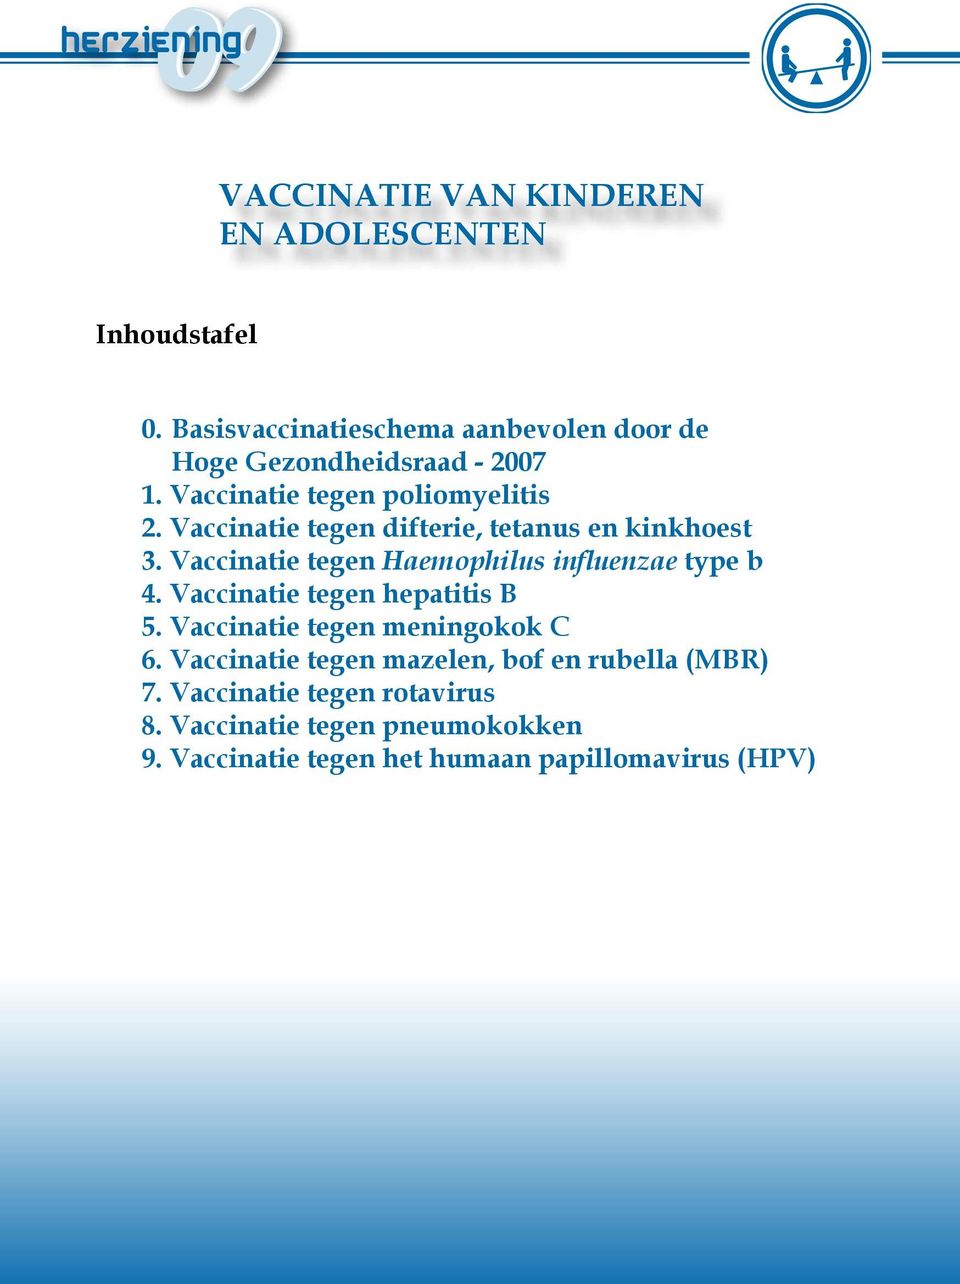 Vaccinatie tegen difterie, tetanus en kinkhoest 3. Vaccinatie tegen Haemophilus influenzae type b 4.